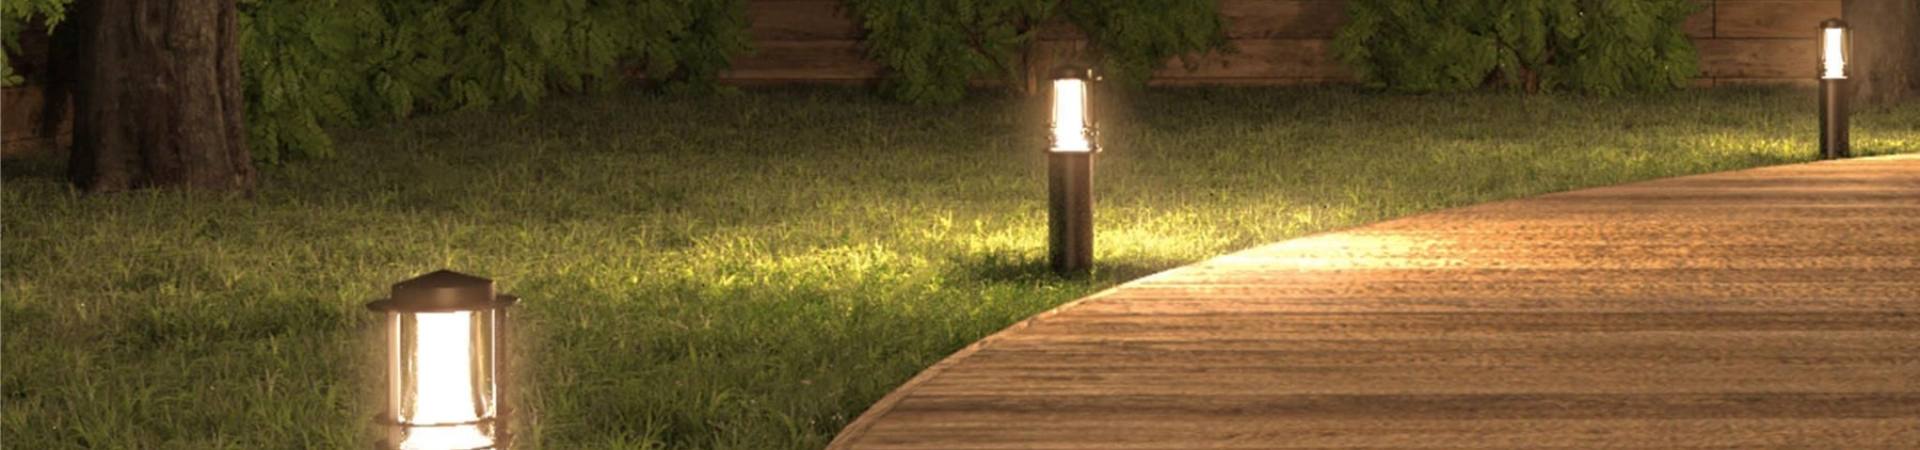 LED Wegbeleuchtung für Grundtsück und Garten